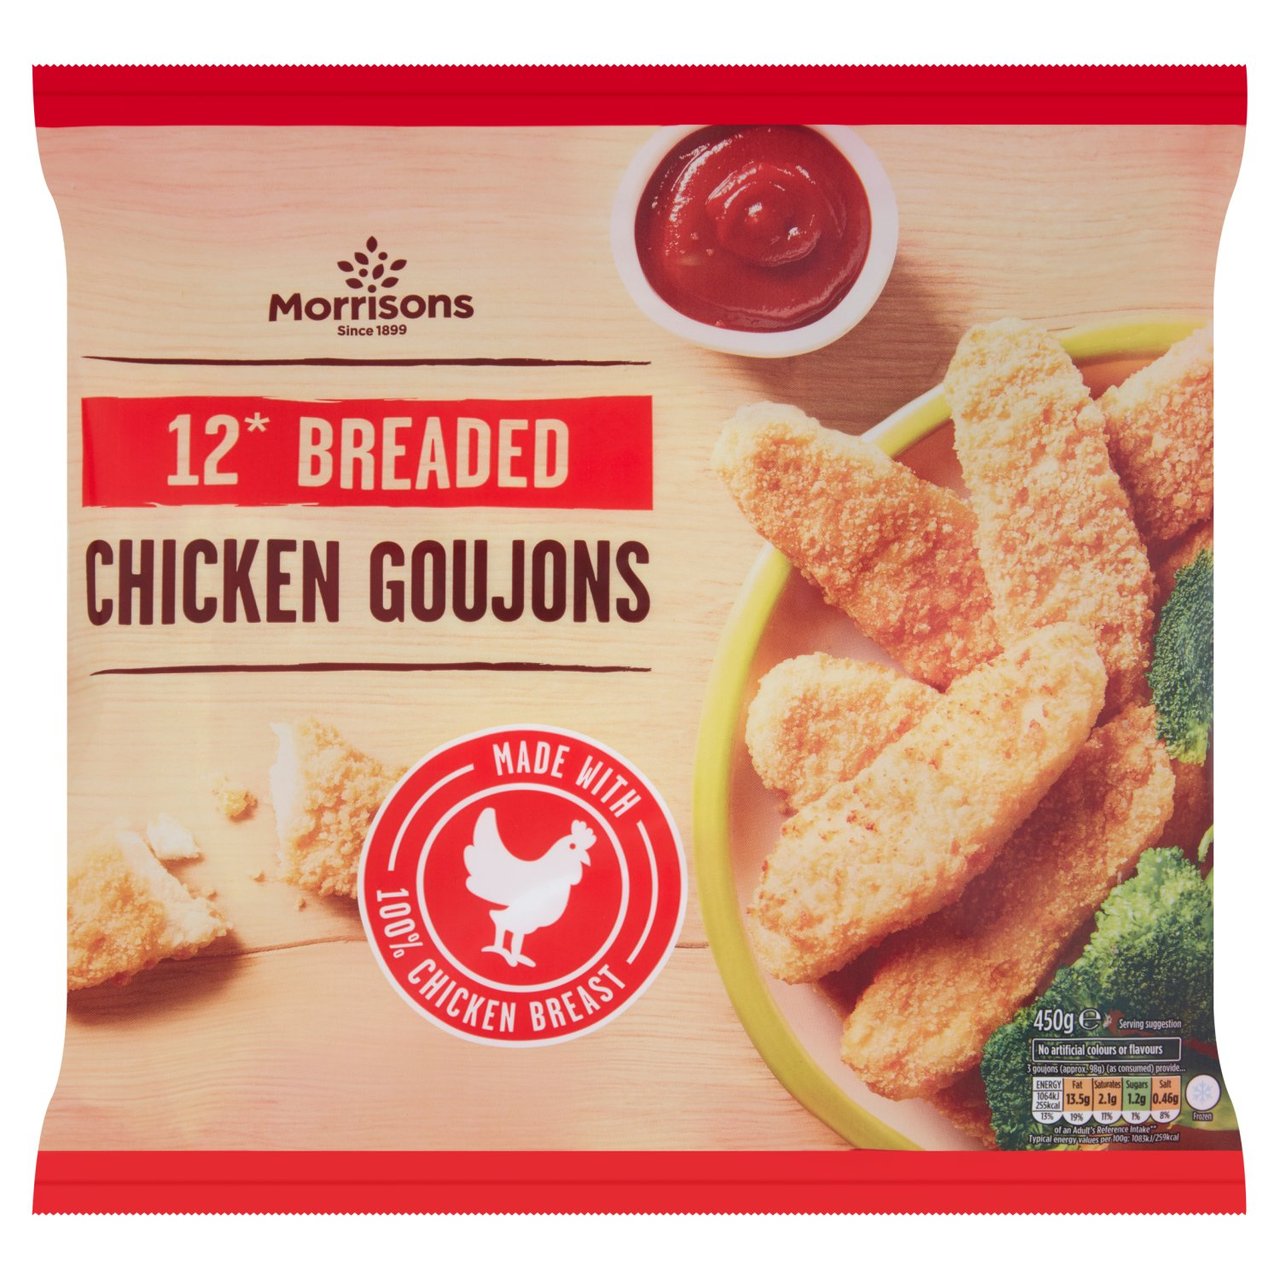 Morrisons 12 Breaded Chicken Goujons 450g